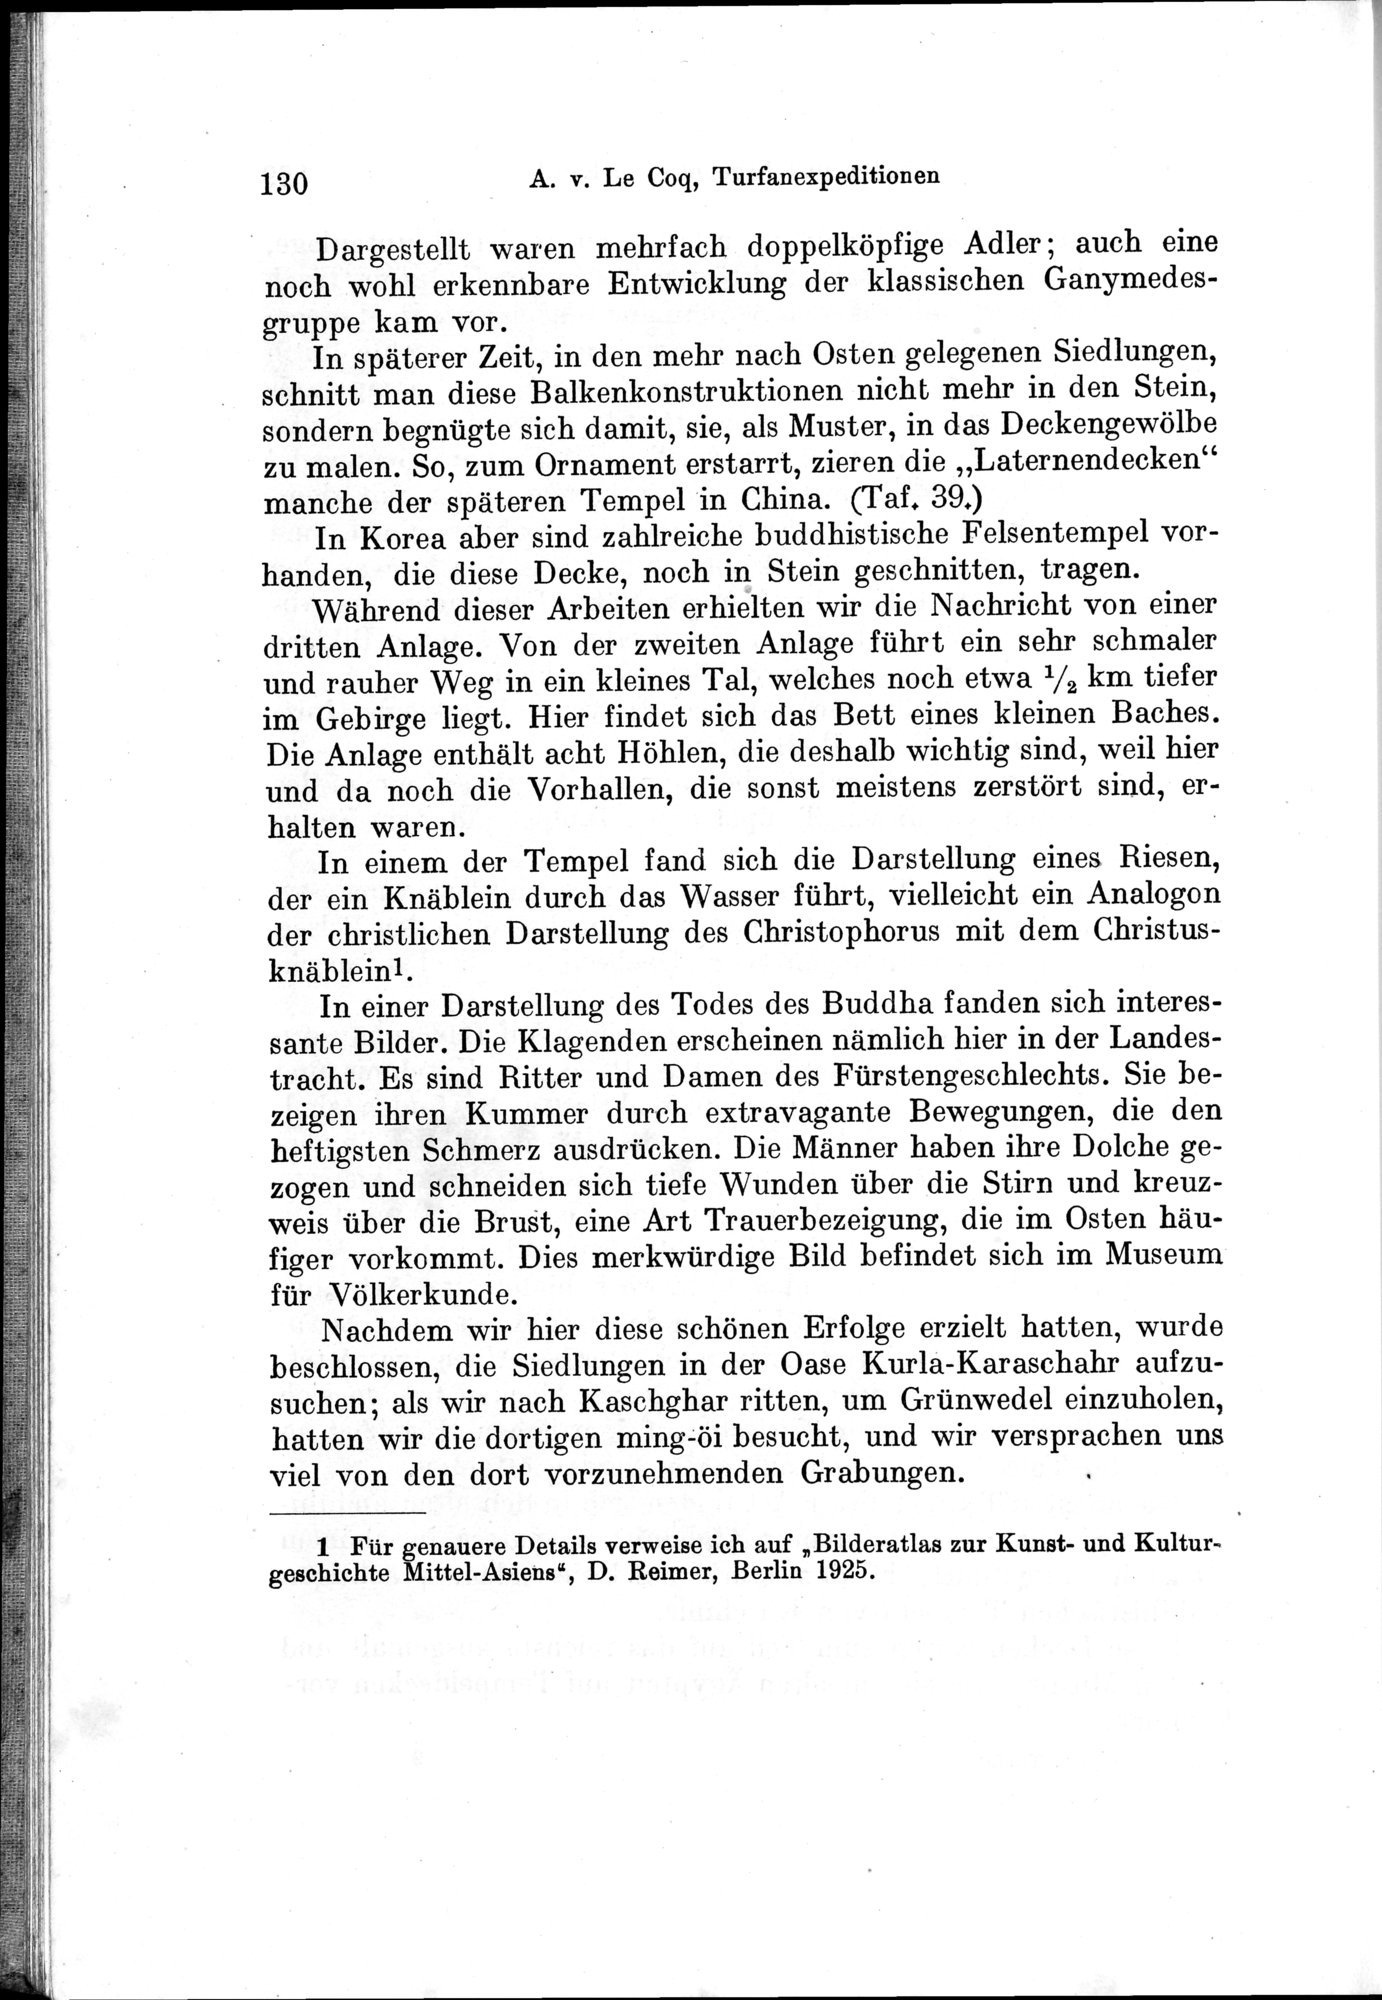 Auf Hellas Spuren in Ostturkistan : vol.1 / Page 188 (Grayscale High Resolution Image)